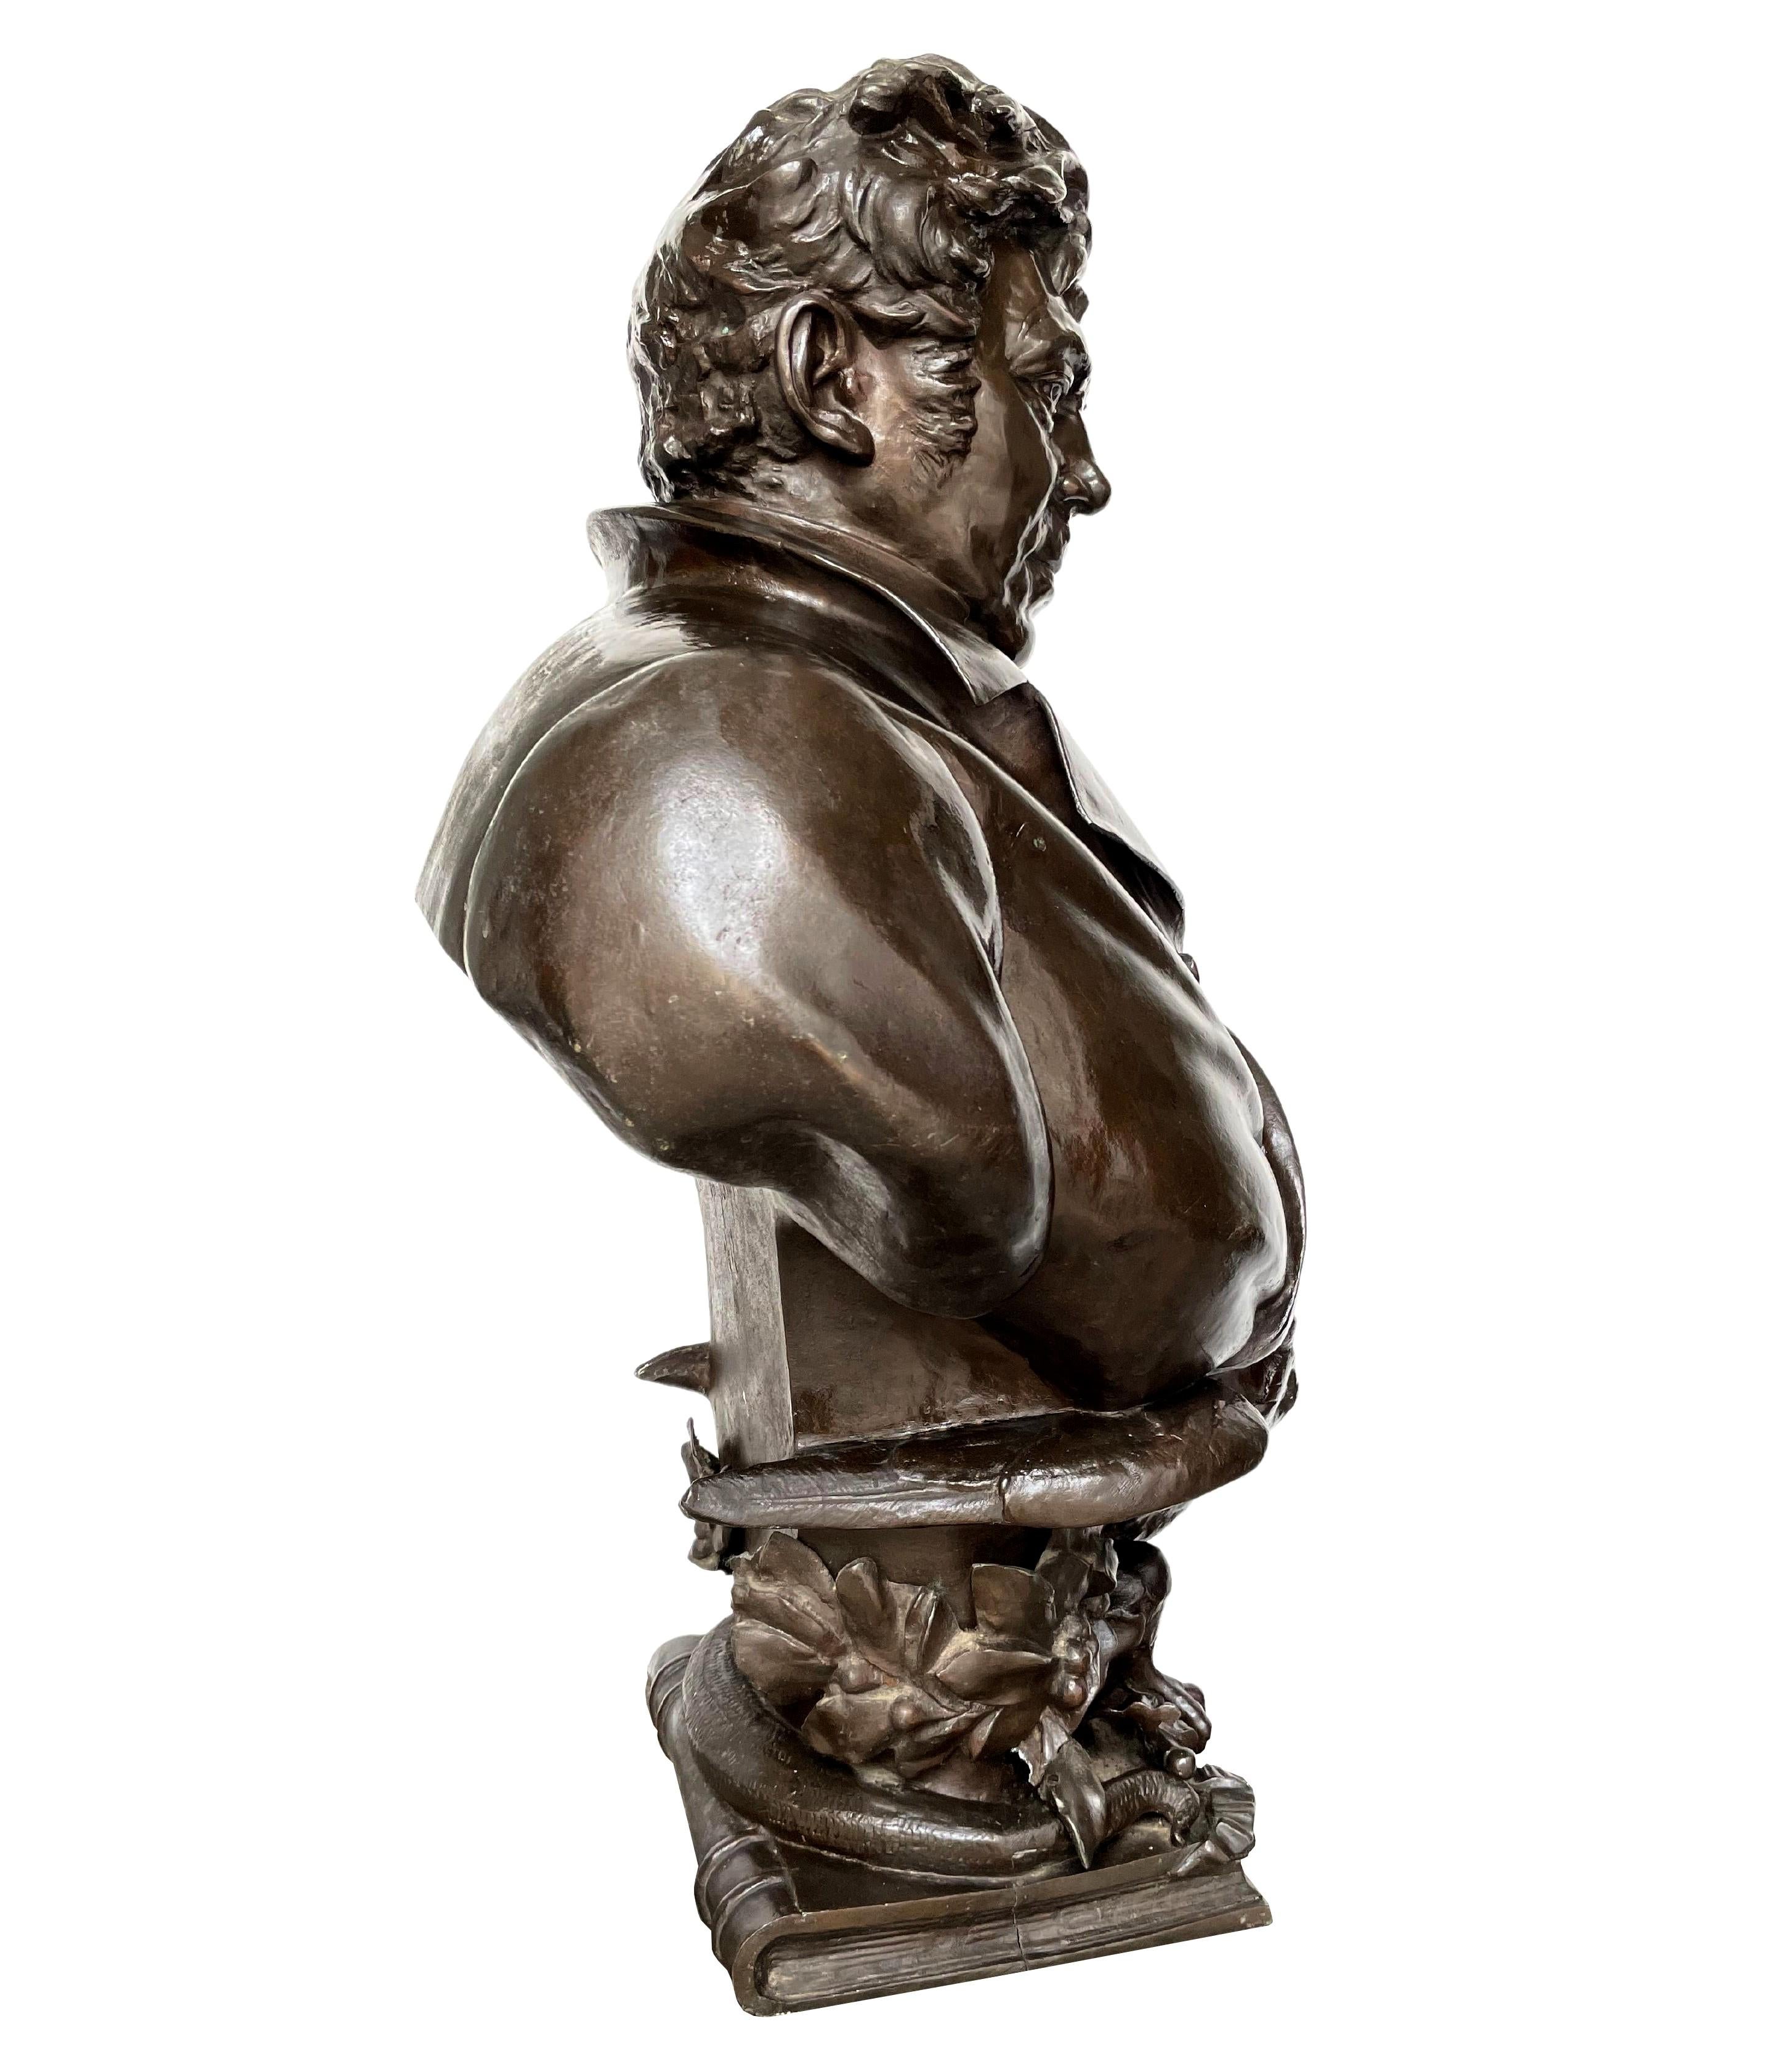 Große Büste von Adolphe Burggraeve (1806-1902), großer Humanist, Chirurg und Professor für Medizin an der Universität Gent, Erfinder der dosimetrischen Medizin, von Cyprian Godebski (1835-1909), französisch-polnischer Bildhauer. Ausgeführt um